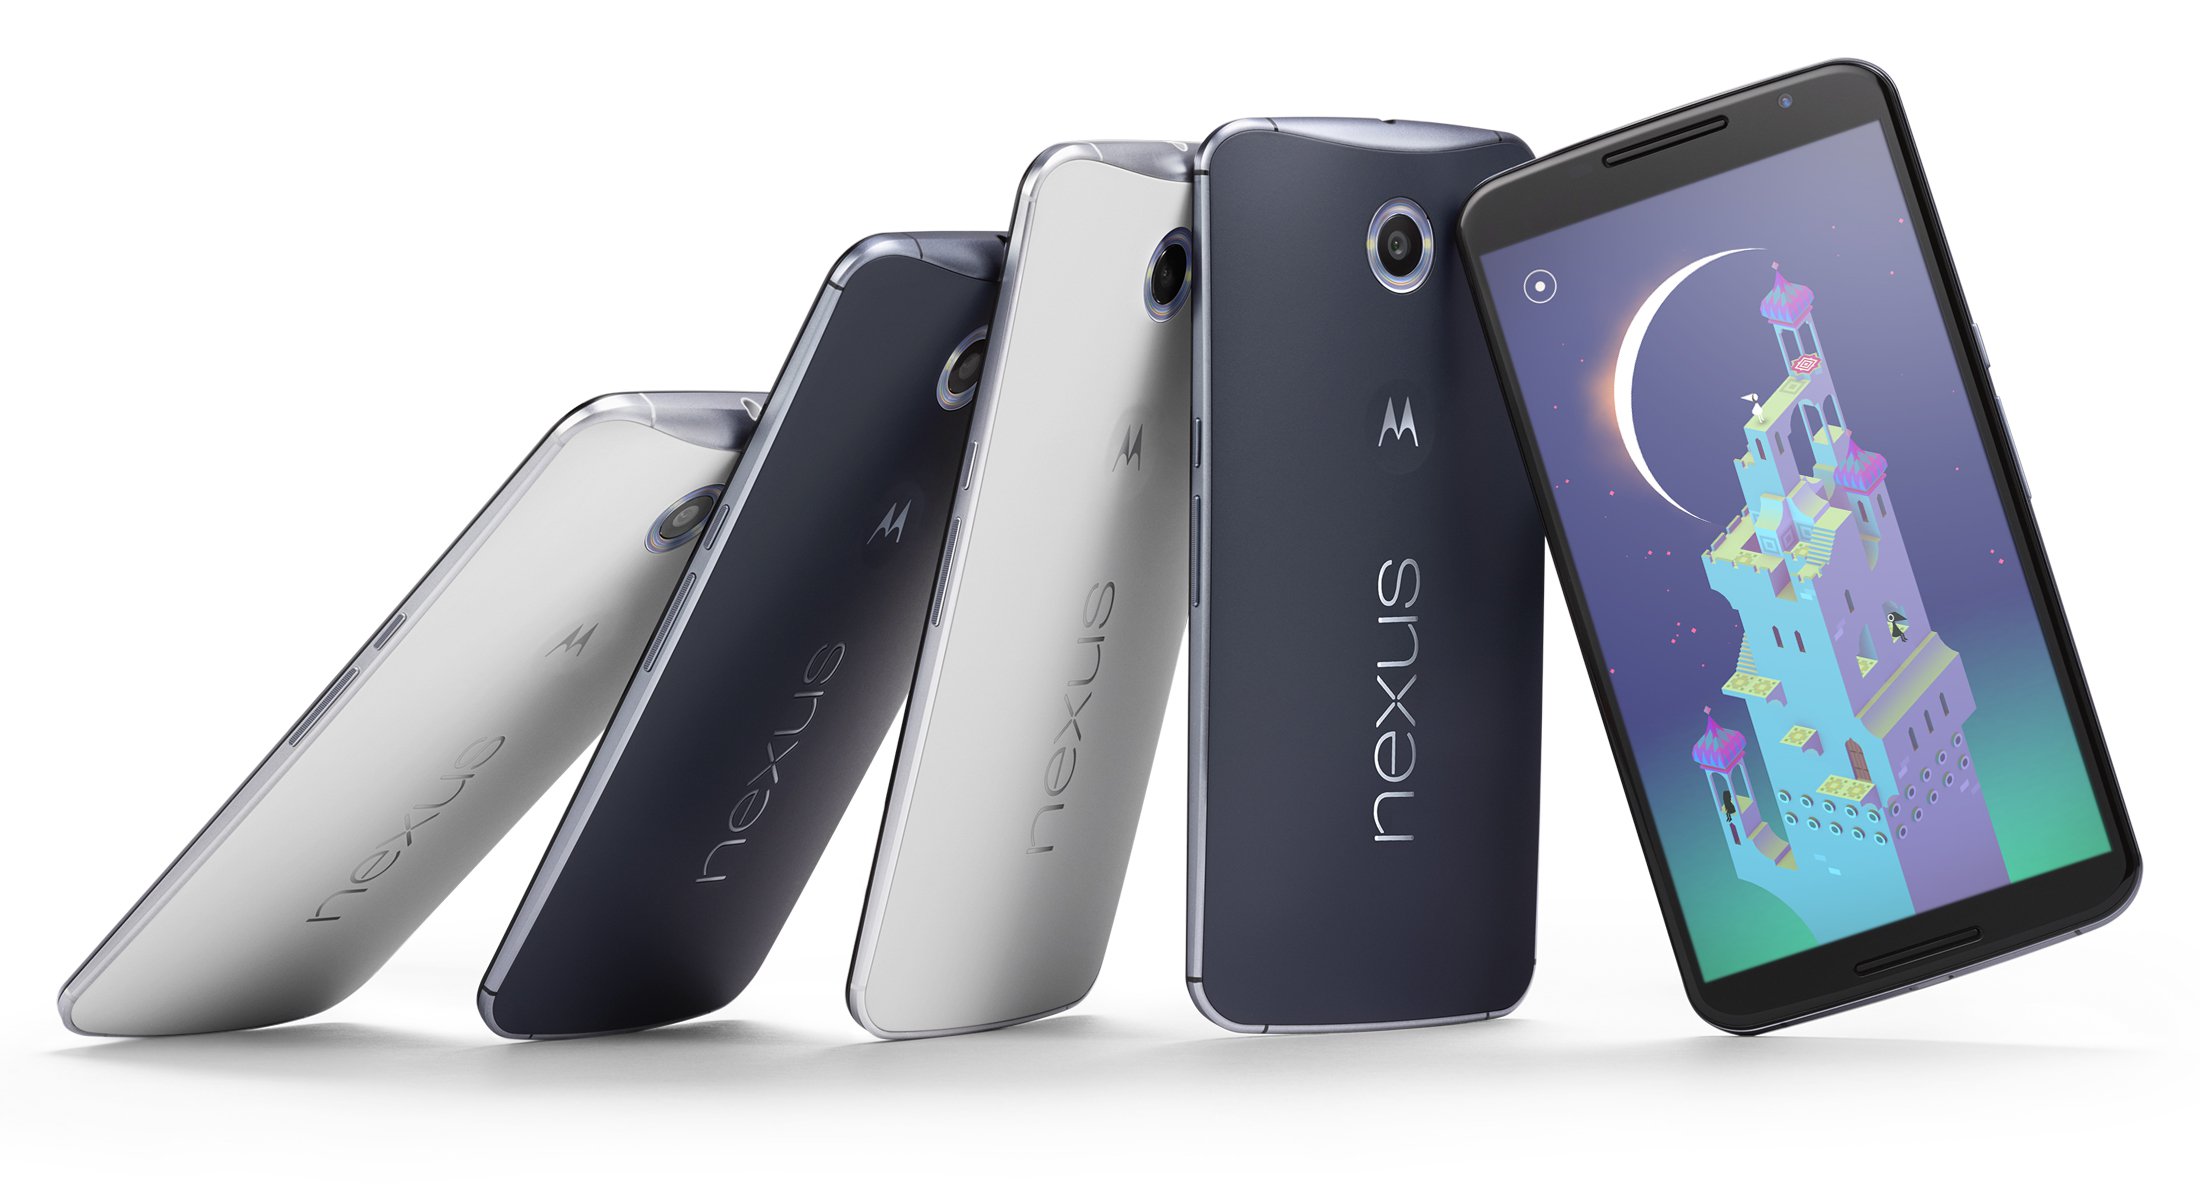 Nexus 6 To Go On Sale In India from 18 November. RVCJ Media